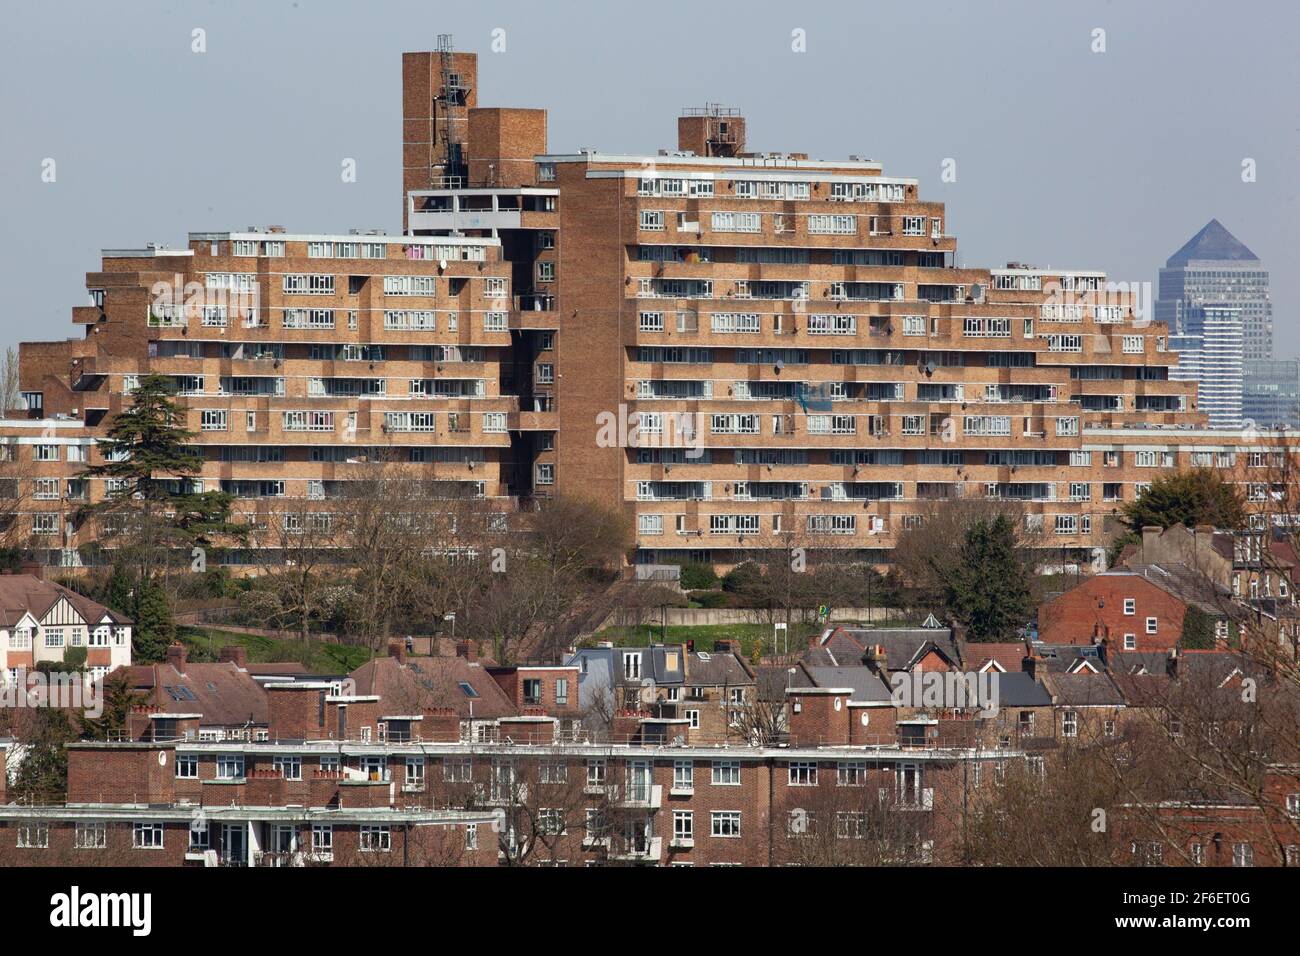 Dawson's Heights, eine 12-stöckige Wohnanlage in Ziggurat-Form in East Dulwich, wurde 1966 von der Architektin Kate Macintosh für den Southwark Council entworfen. Stockfoto